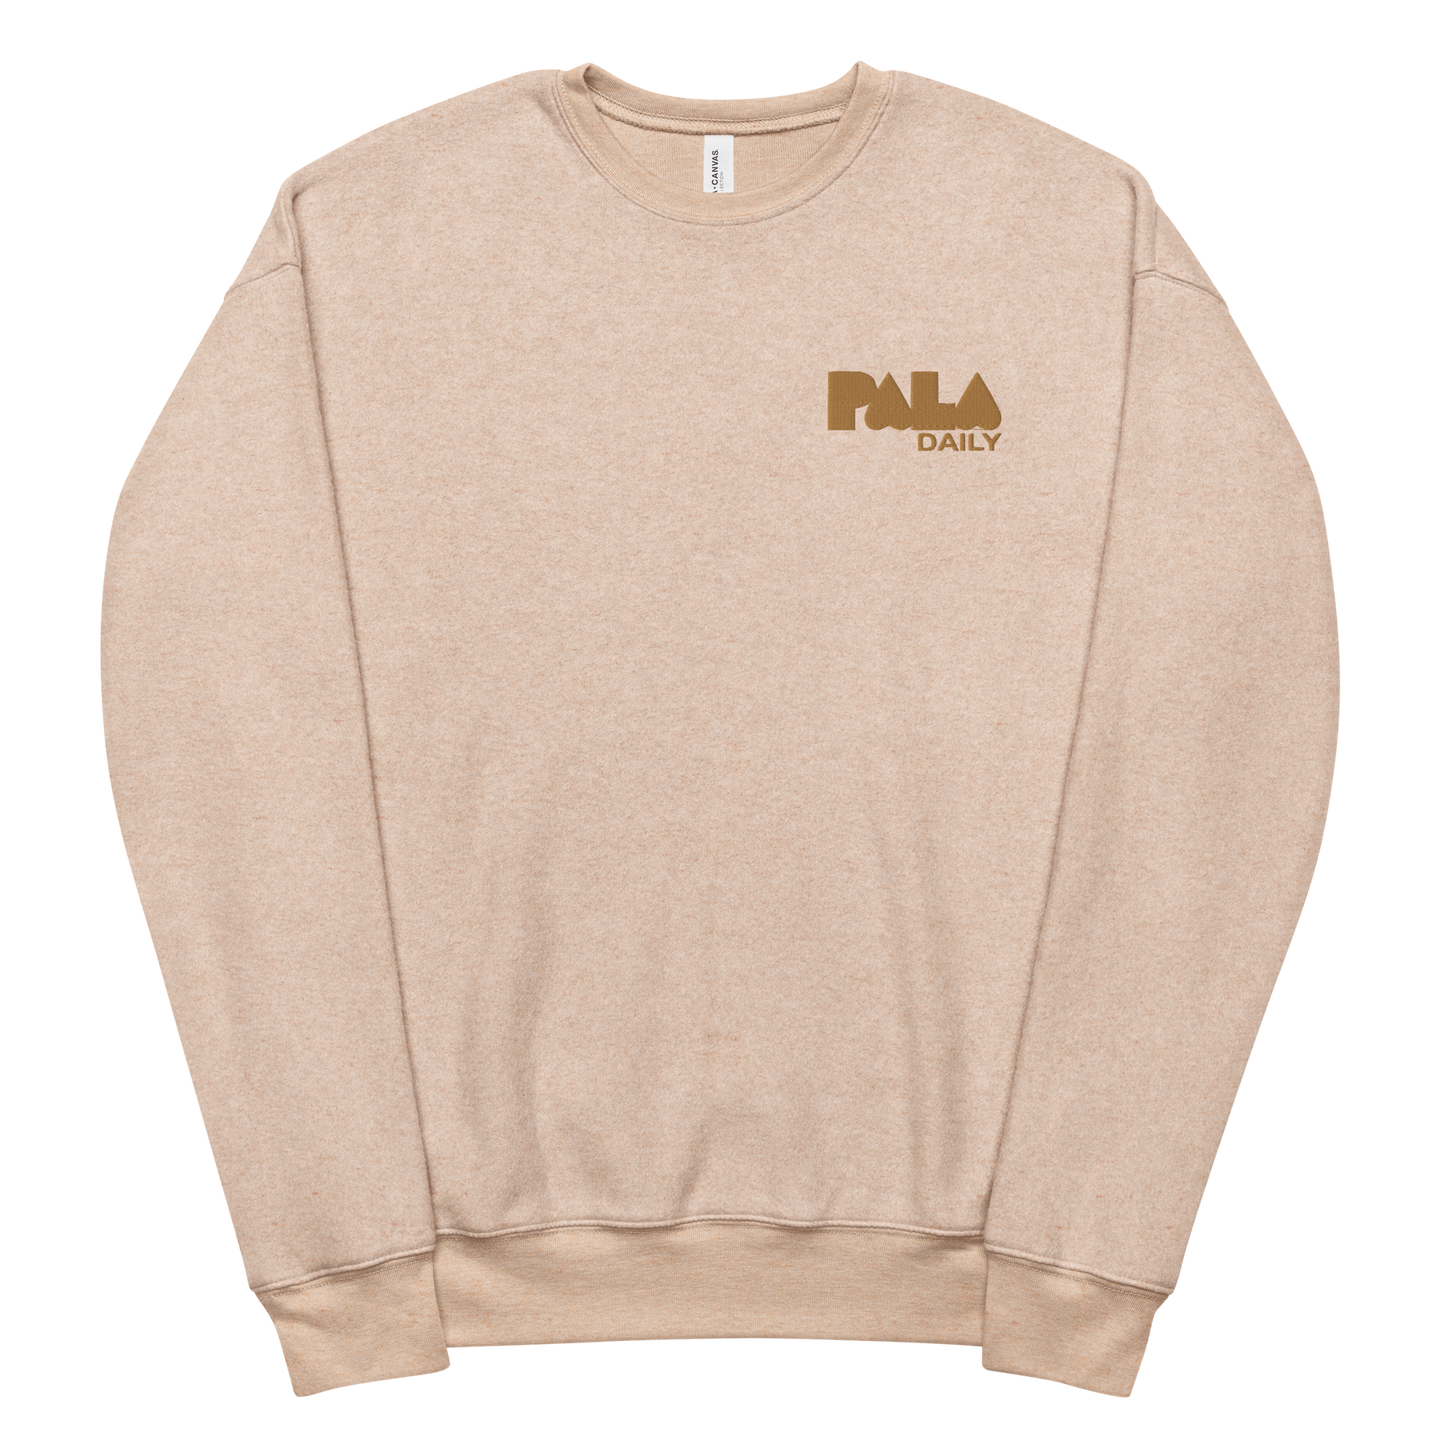 PALA - Unisex sueded fleece sweatshirt